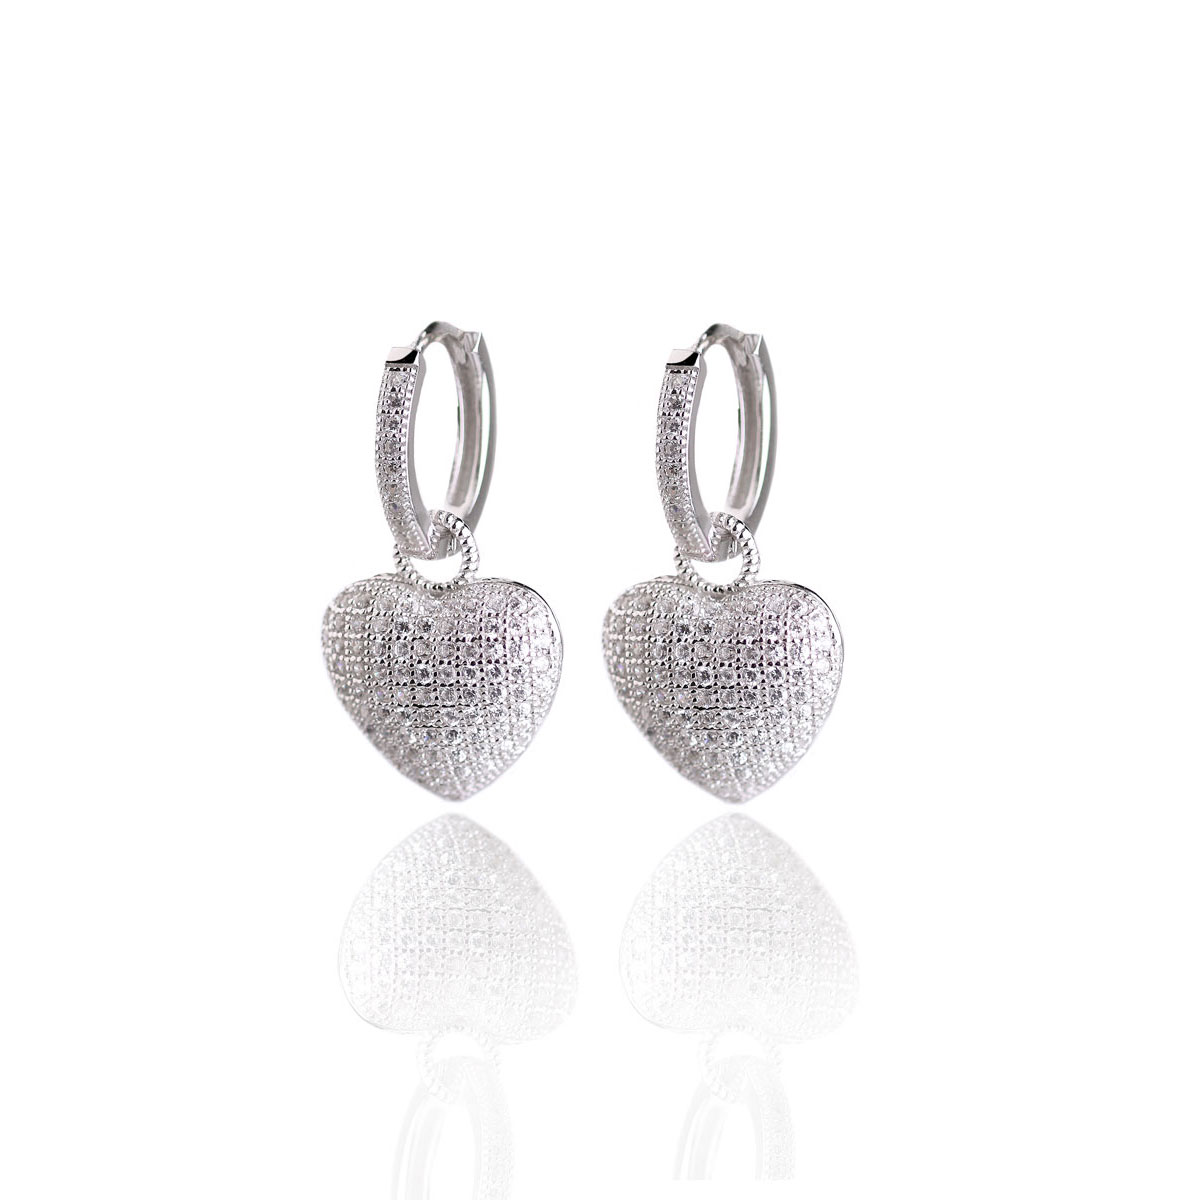 Cashs Ireland, Crystal Pave Sterling Silver Heart Hoop Pierced Earrings, Pair